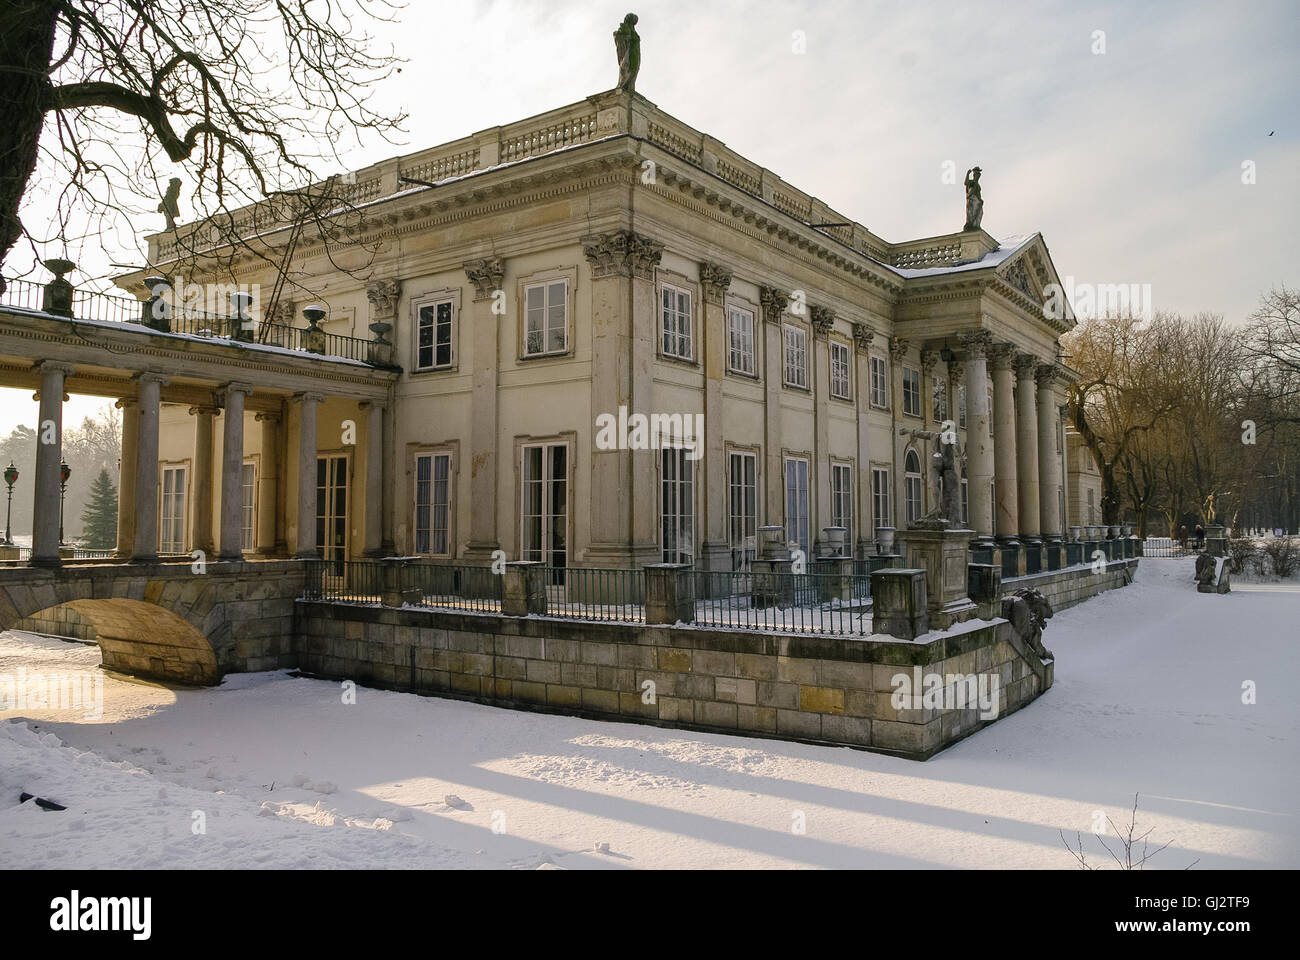 Lazienki Krolewskie, Poland - January 5, 2011: The Lazienki palace in Lazienki Park. Winter landscape with snow. Warsaw. Stock Photo